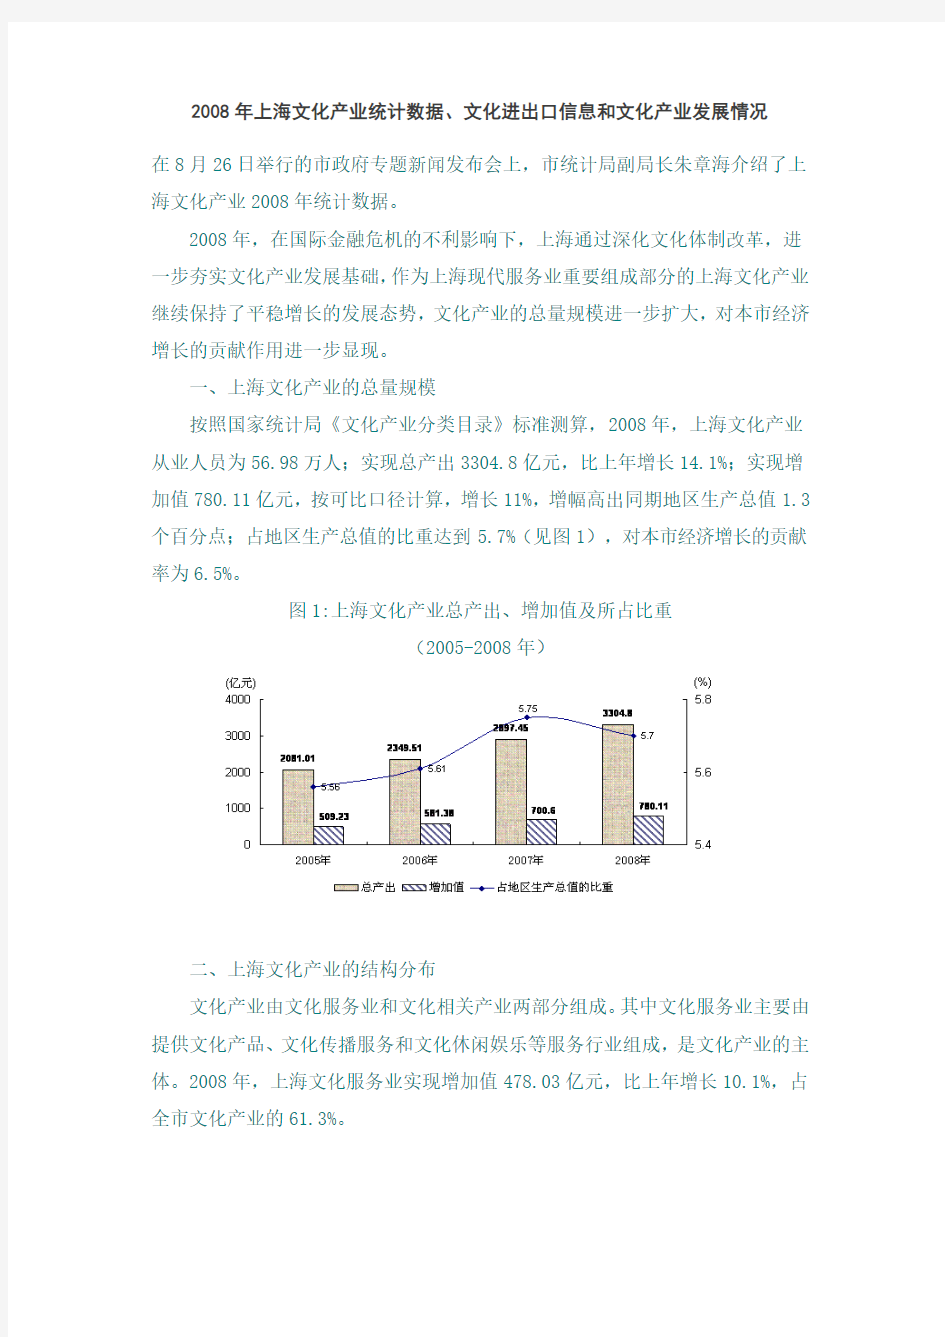 2008年上海文化产业统计数据、文化进出口信息和文化产业发展情况